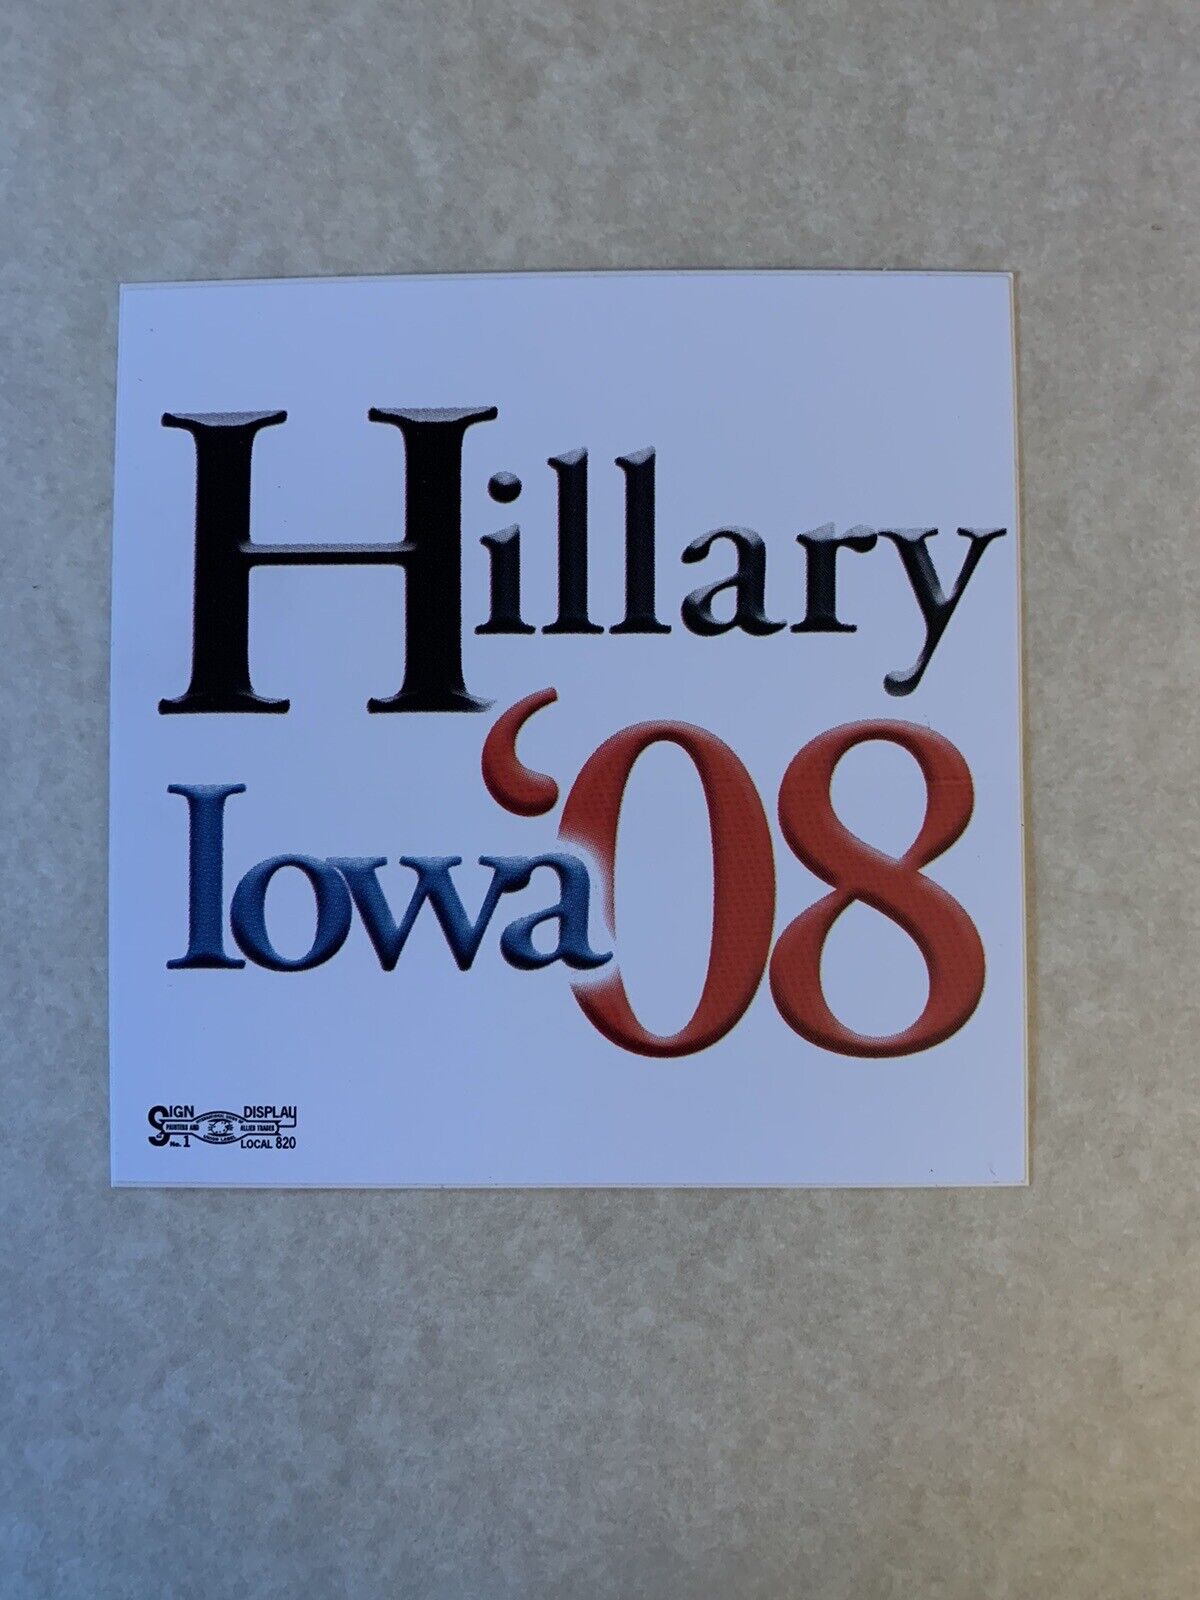 Senator Hillary Clinton President Political Campaign Bumper Sticker Senate 2008